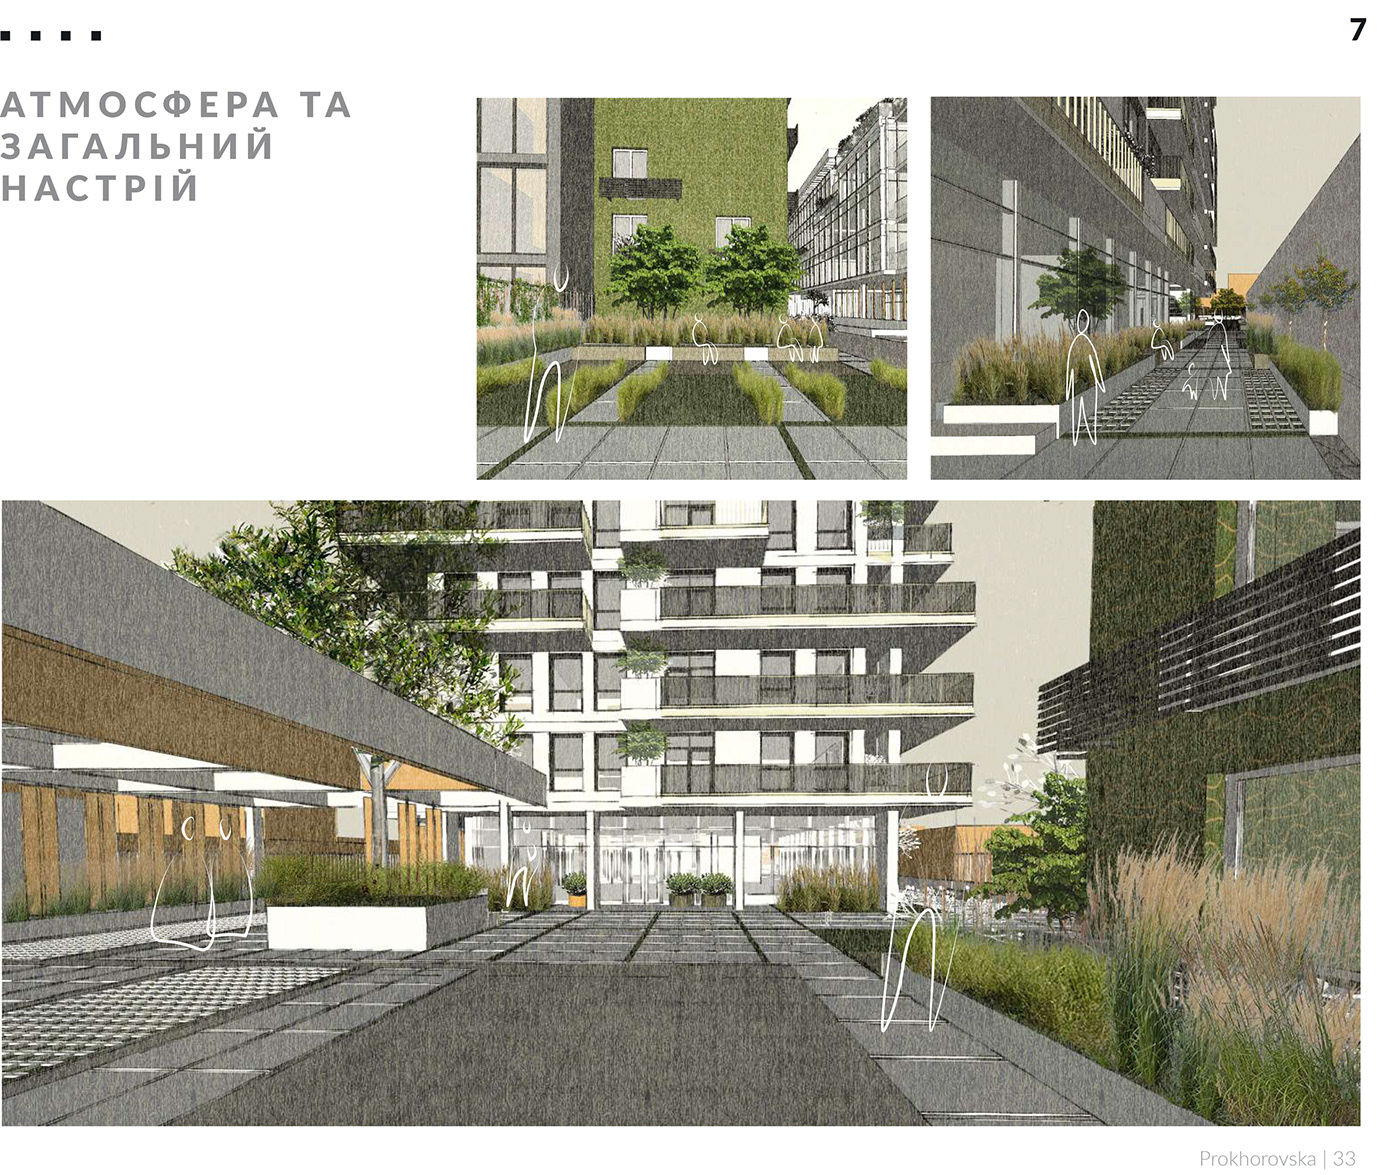 architecture Landscape Masterplan planning Urban Urban Design urban planning urbanism  